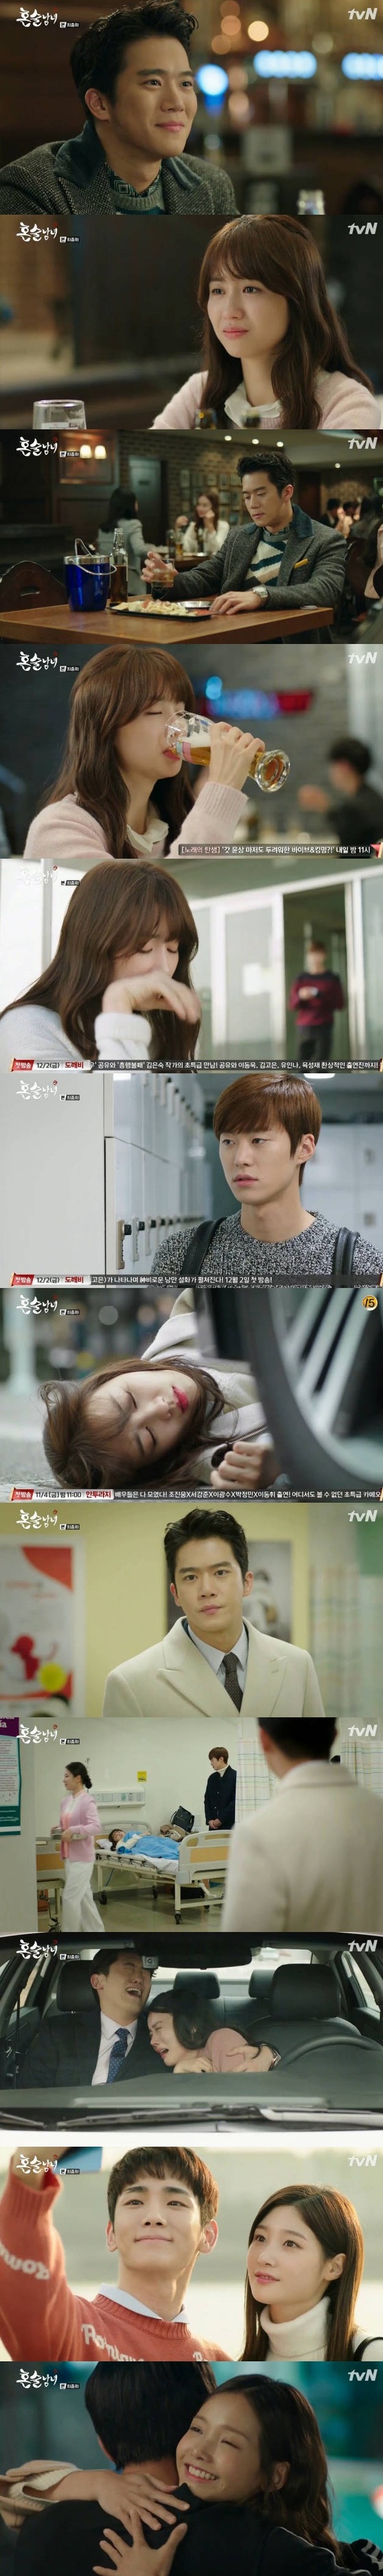 하석진과 박하선이 해피엔딩을 맞이했다. © News1star / tvN '혼술남녀' 캡처